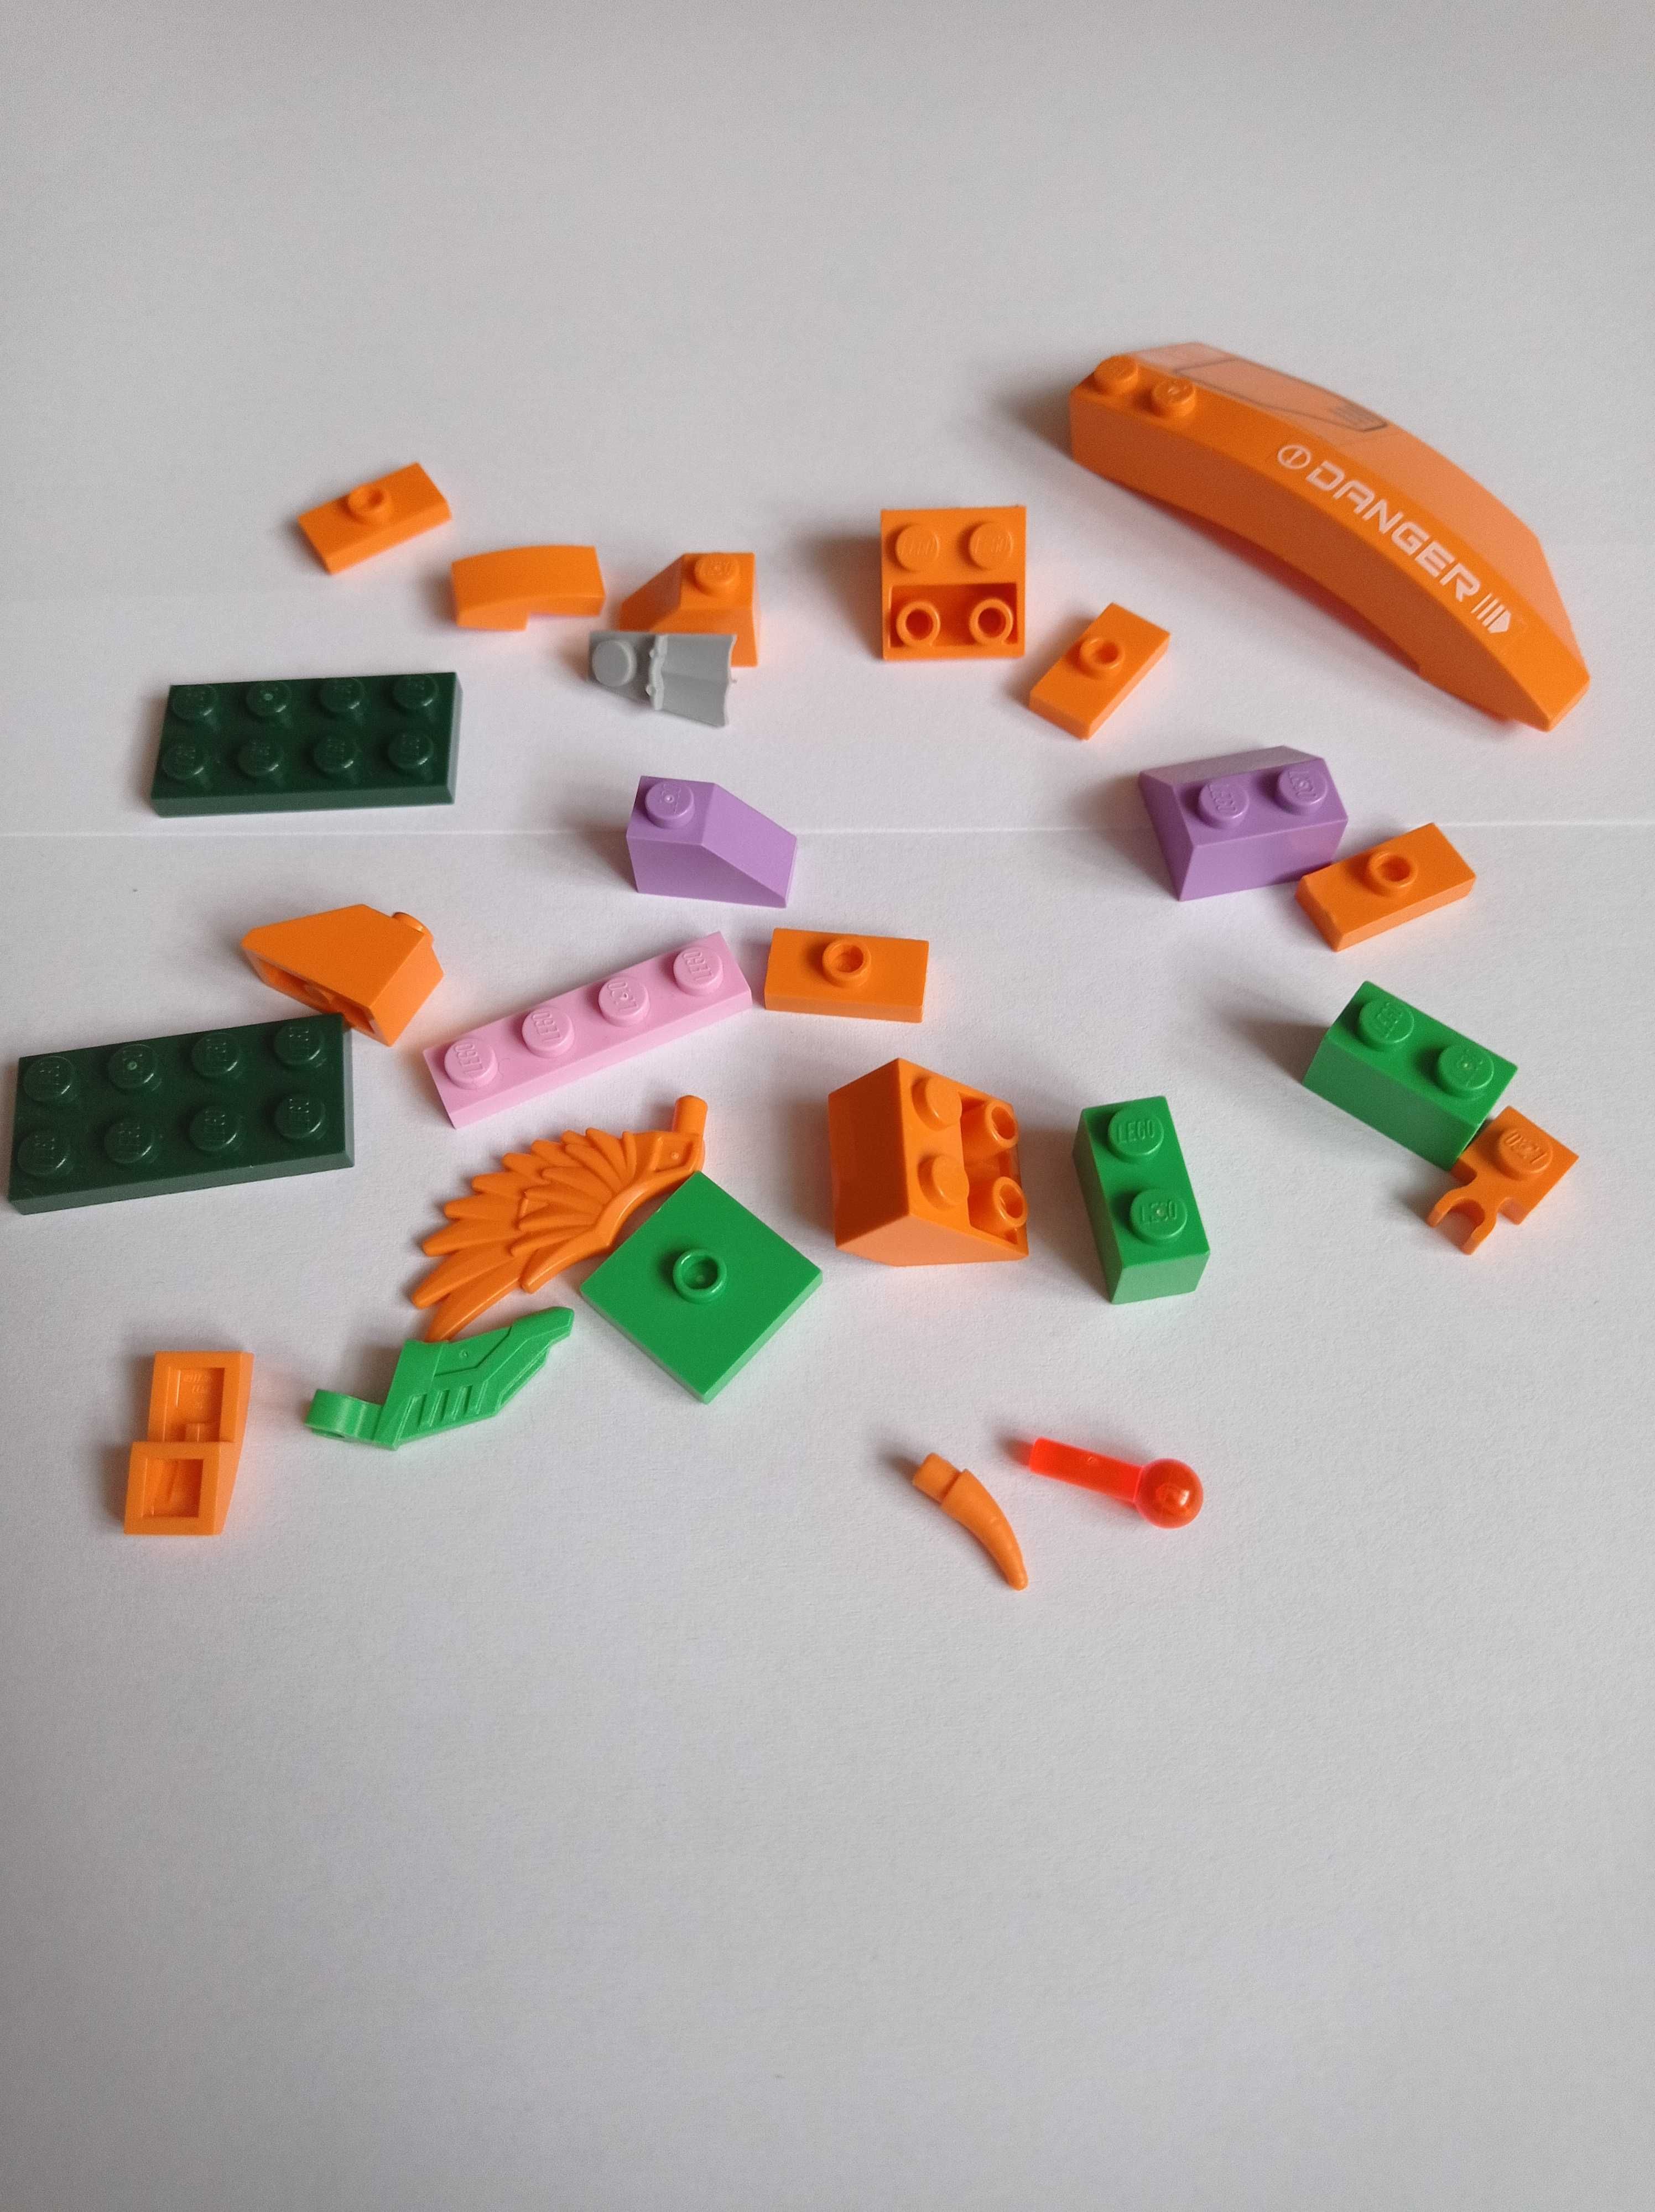 Klocki Lego, kolorowy mix klocków, pomarańczowy, zielony i inne